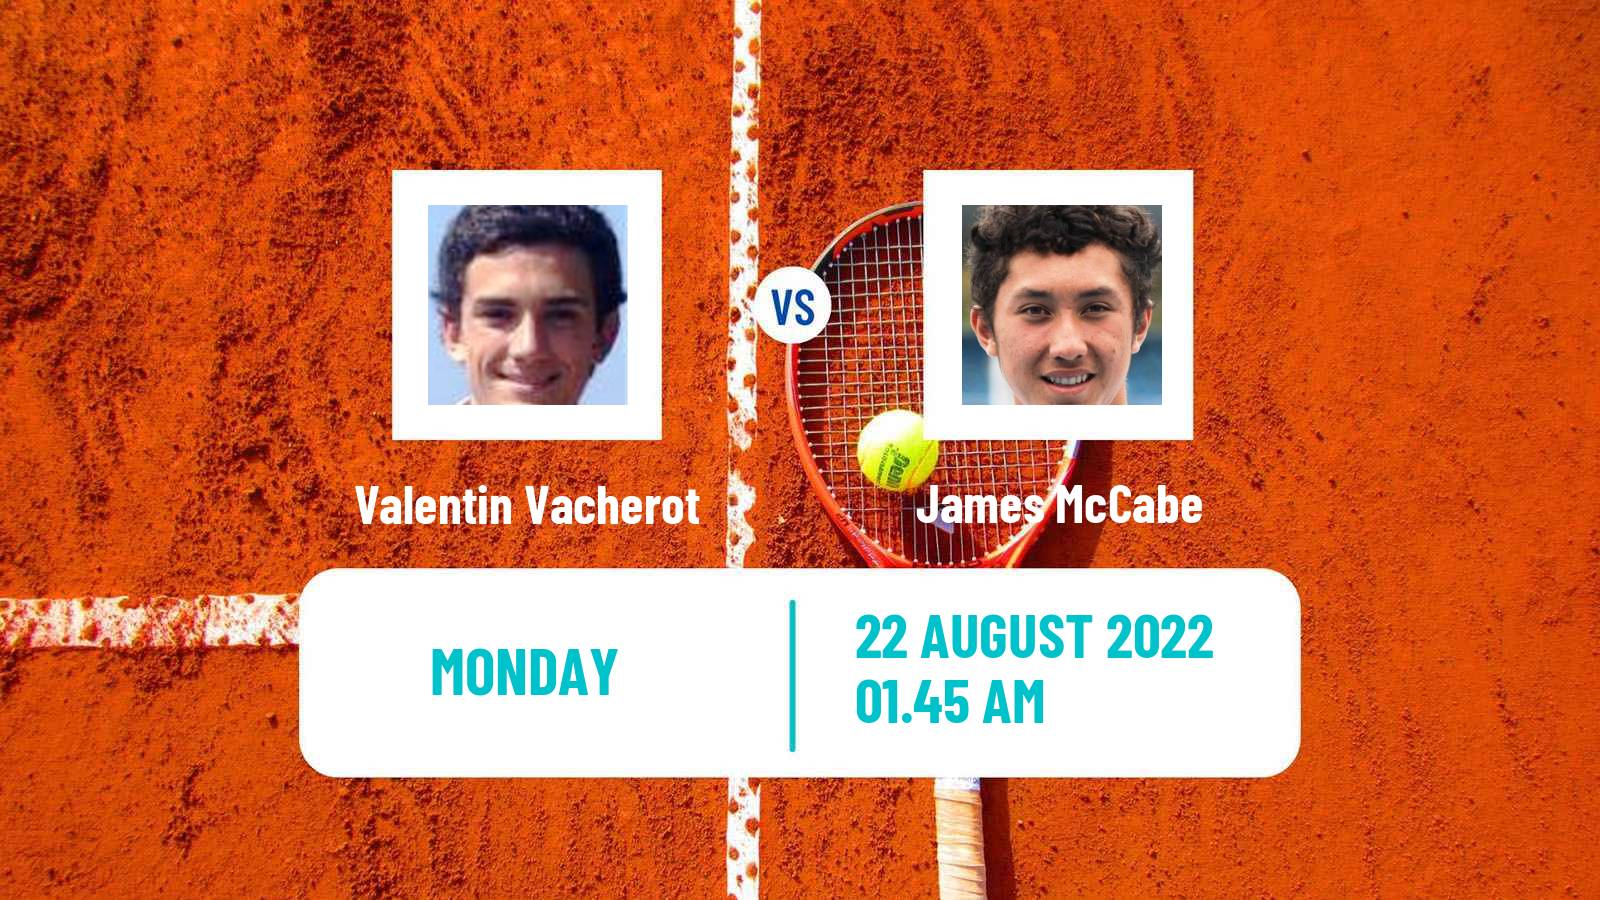 Tennis ATP Challenger Valentin Vacherot - James McCabe